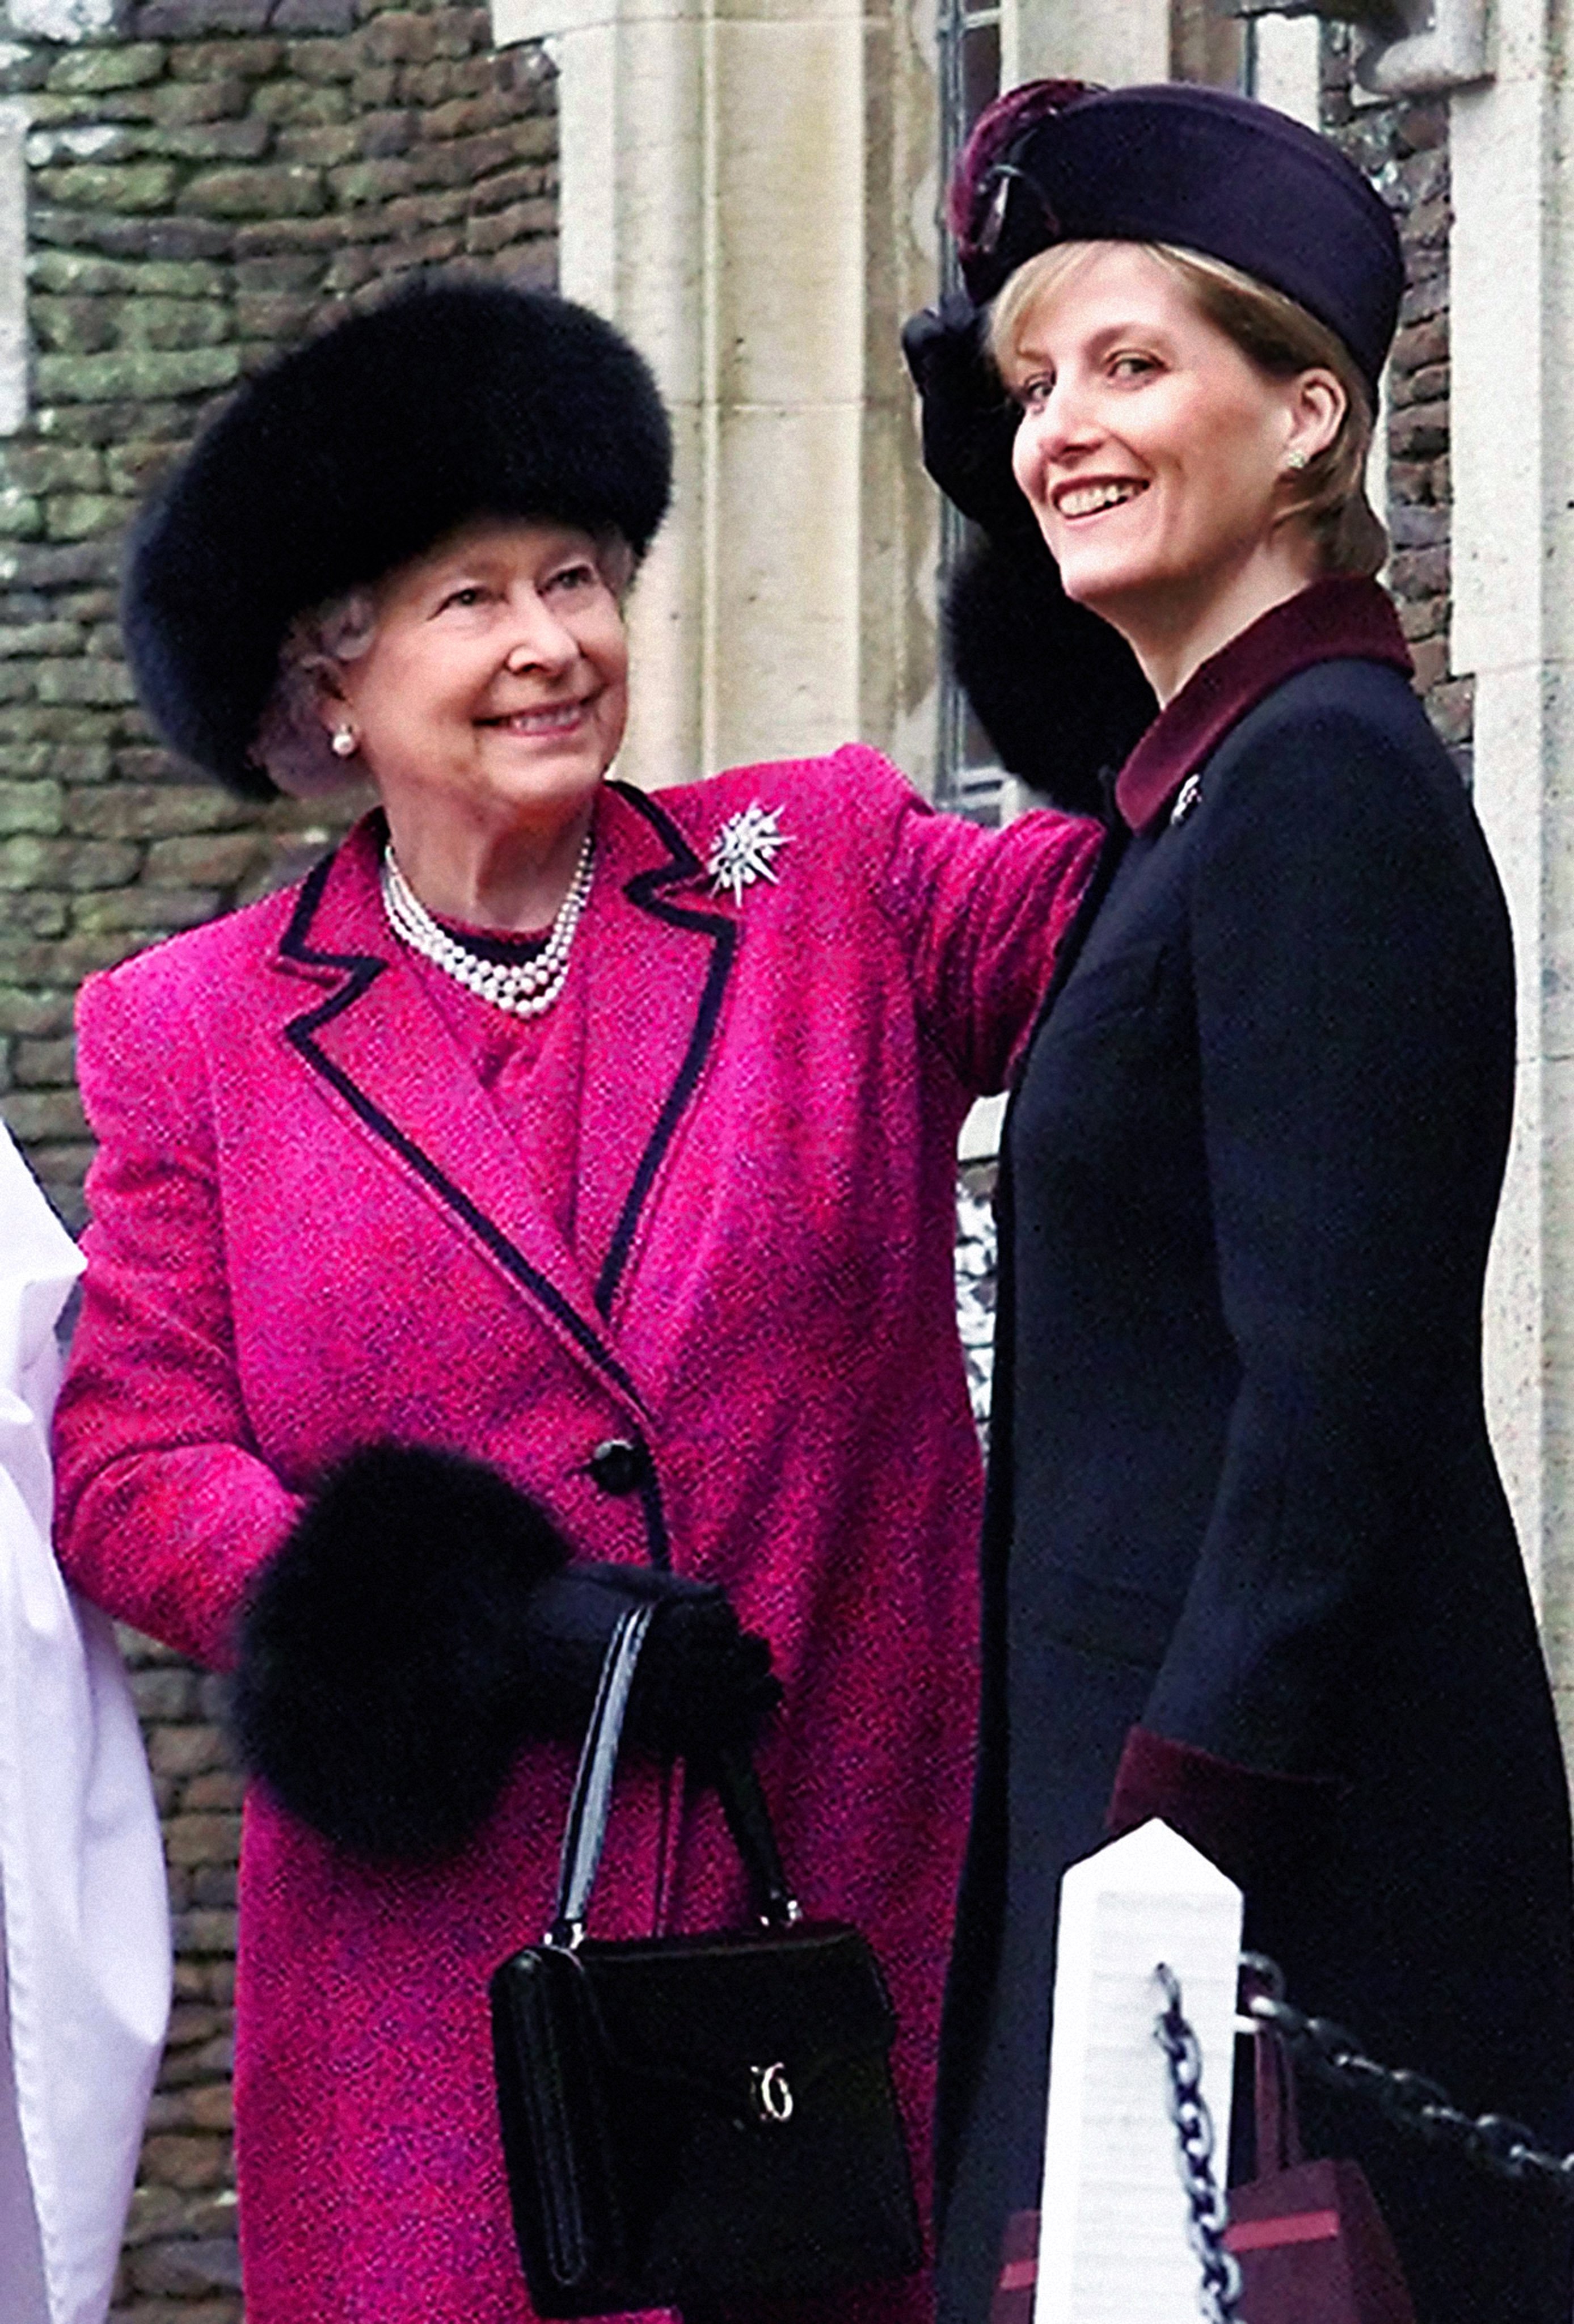 La reina Elizabeth II endereza el sombrero de Sophie, la condesa de Wessex, mientras esperan para asistir al servicio del día de Navidad en la iglesia de Sandringham. | Foto: Getty Images